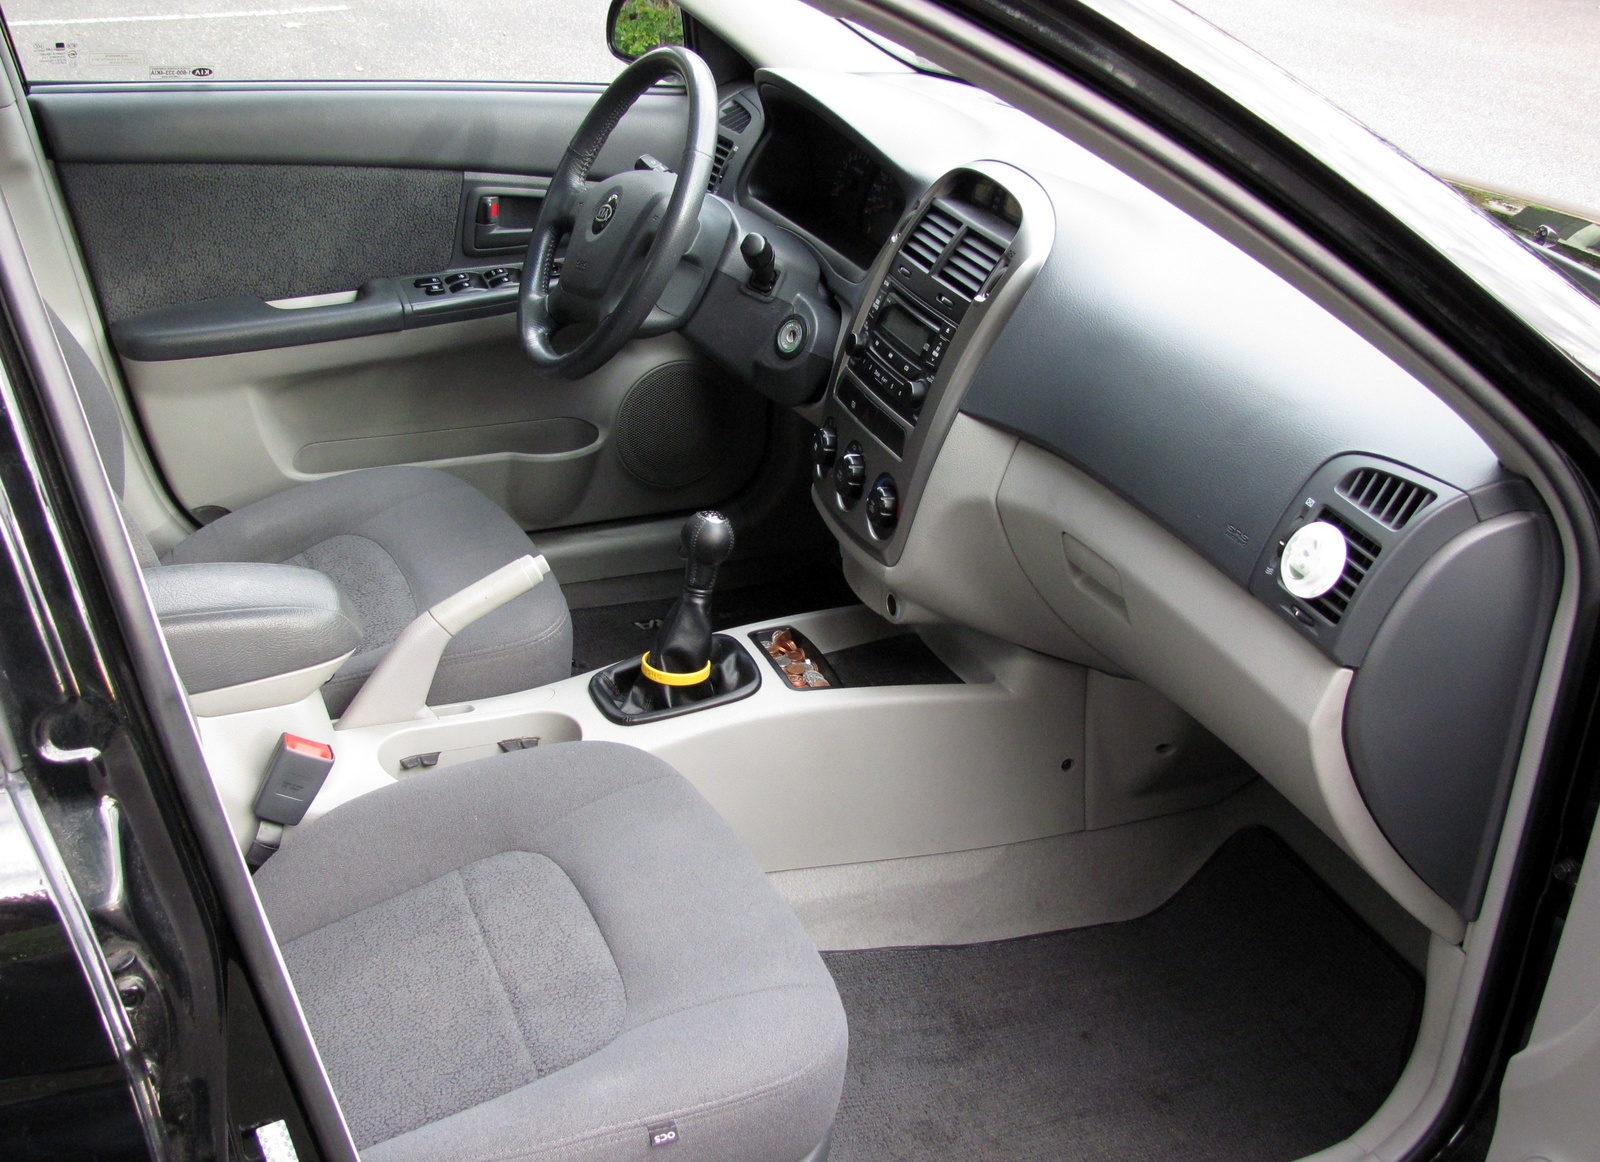 Kia Spectra II 2004 - 2008 Hatchback 5 door #4